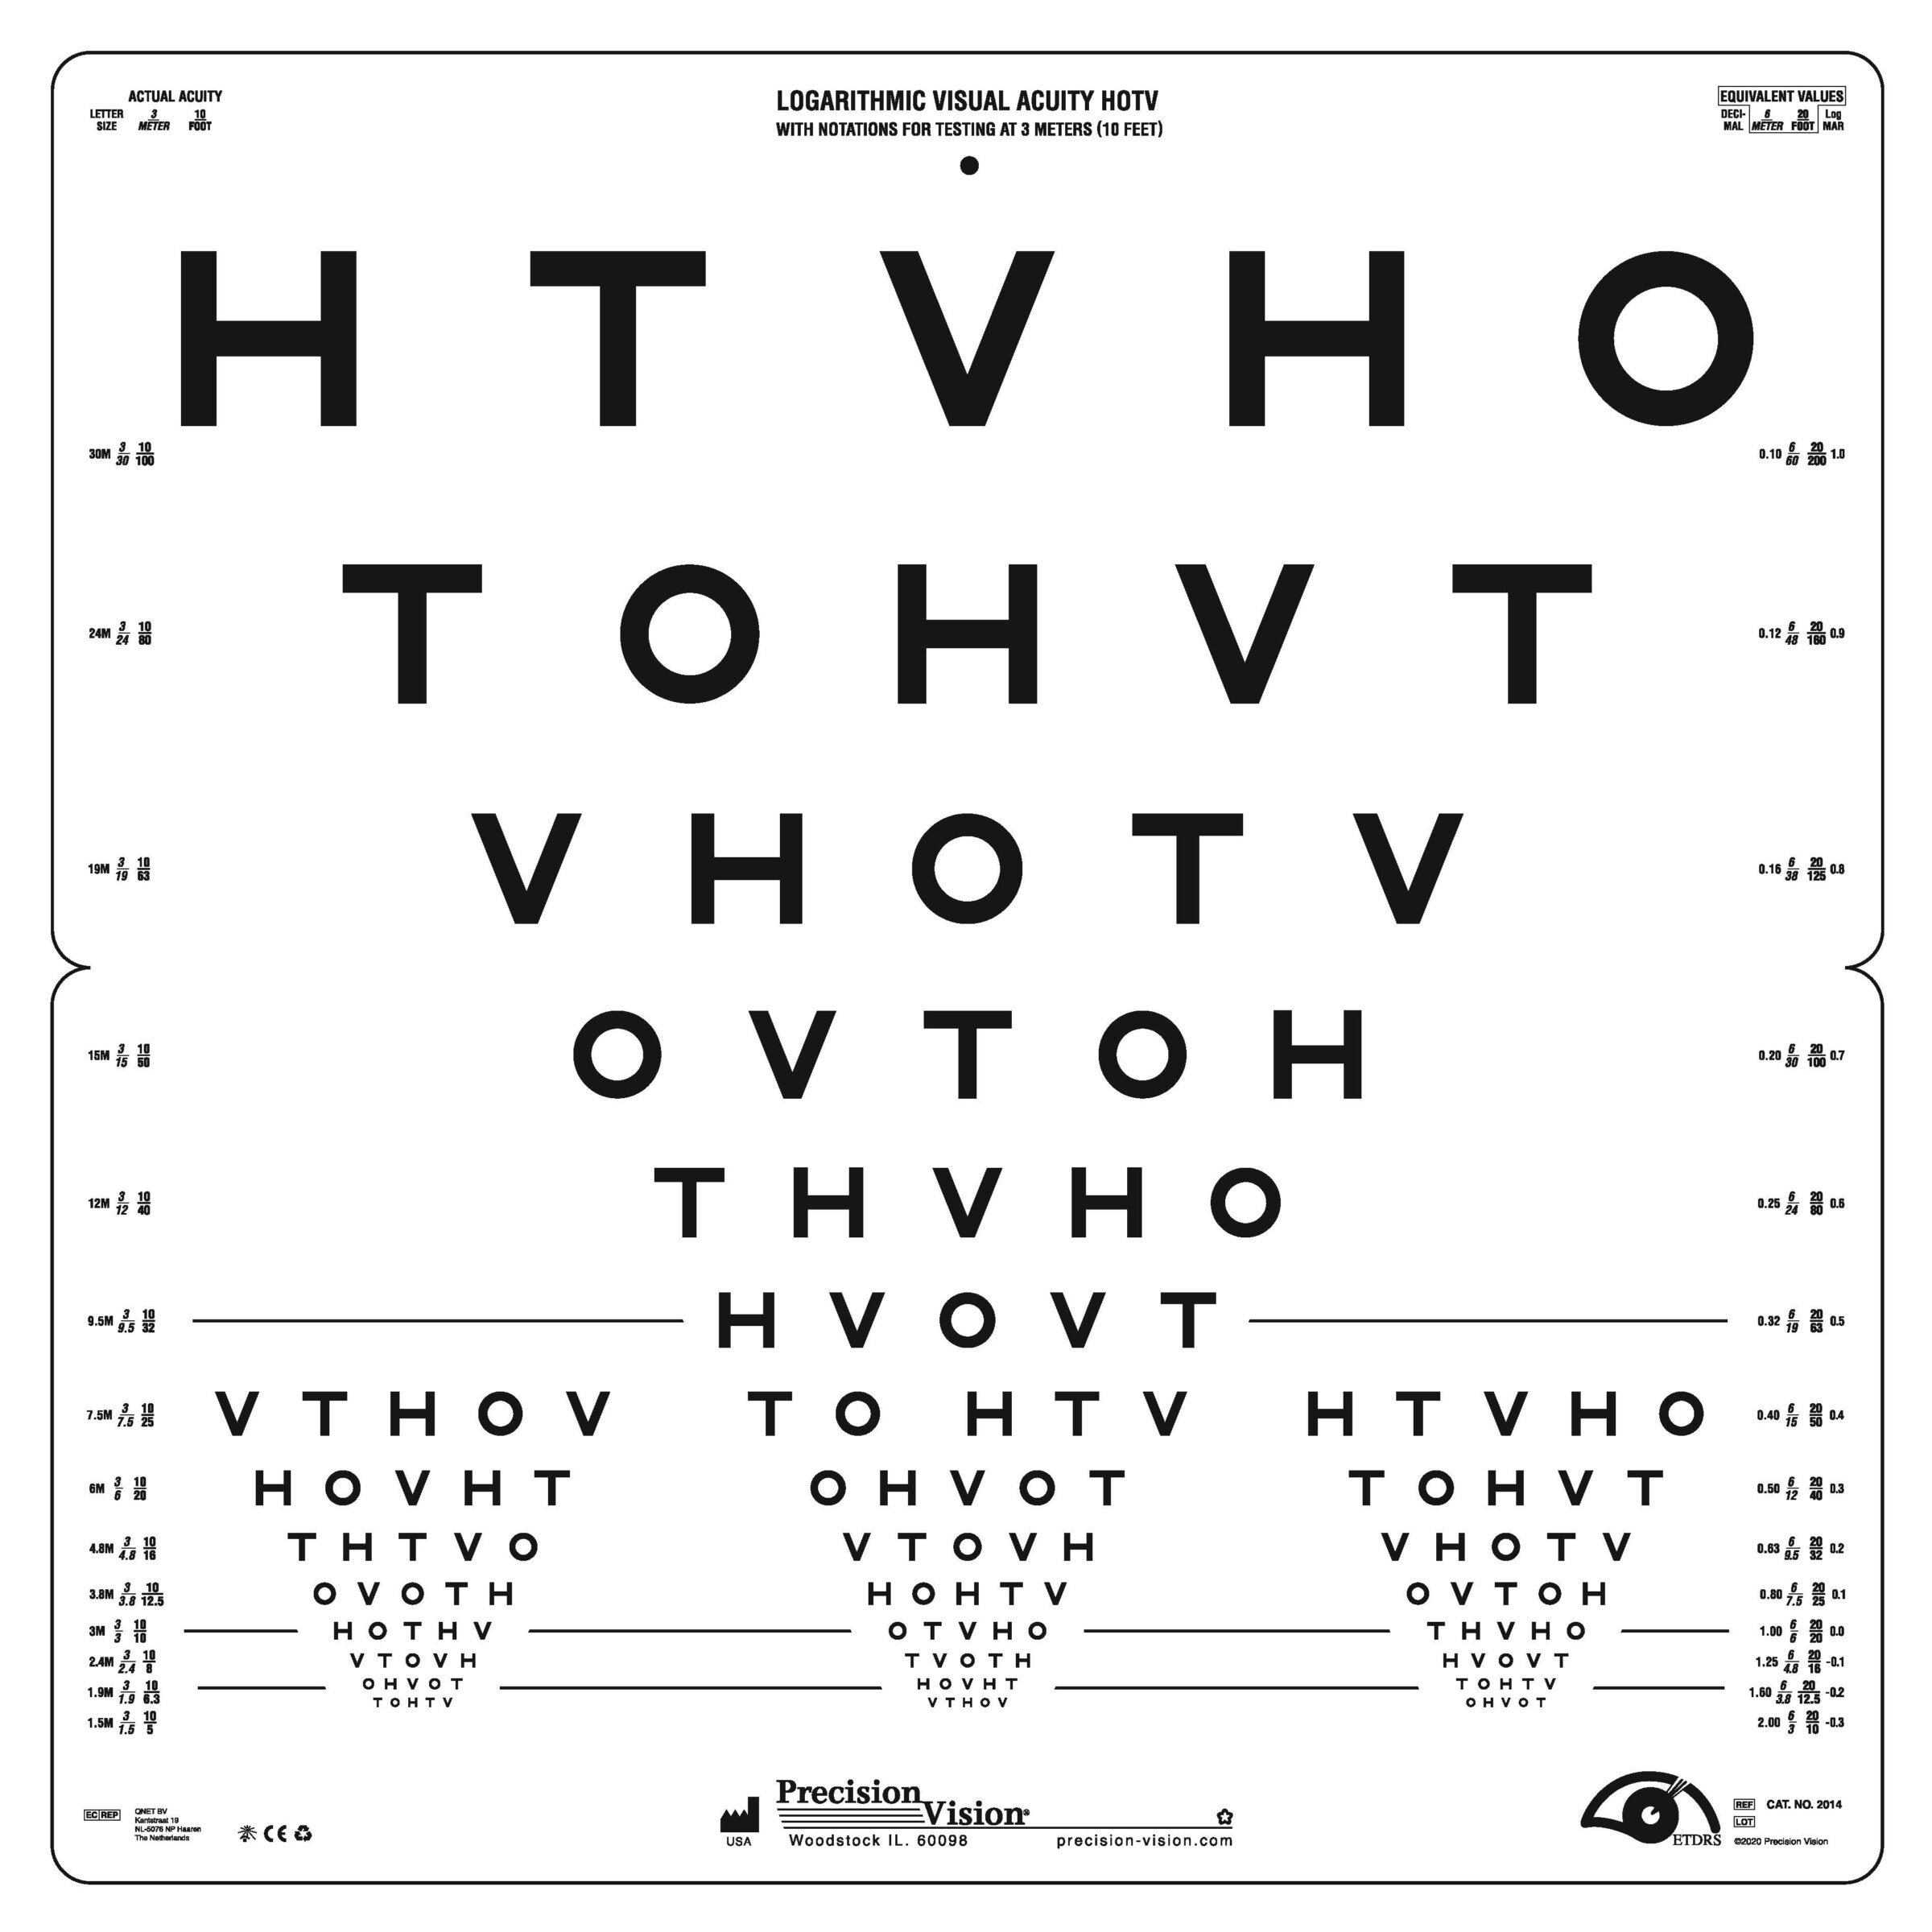 HOTV Translucent 20' Eye Chart